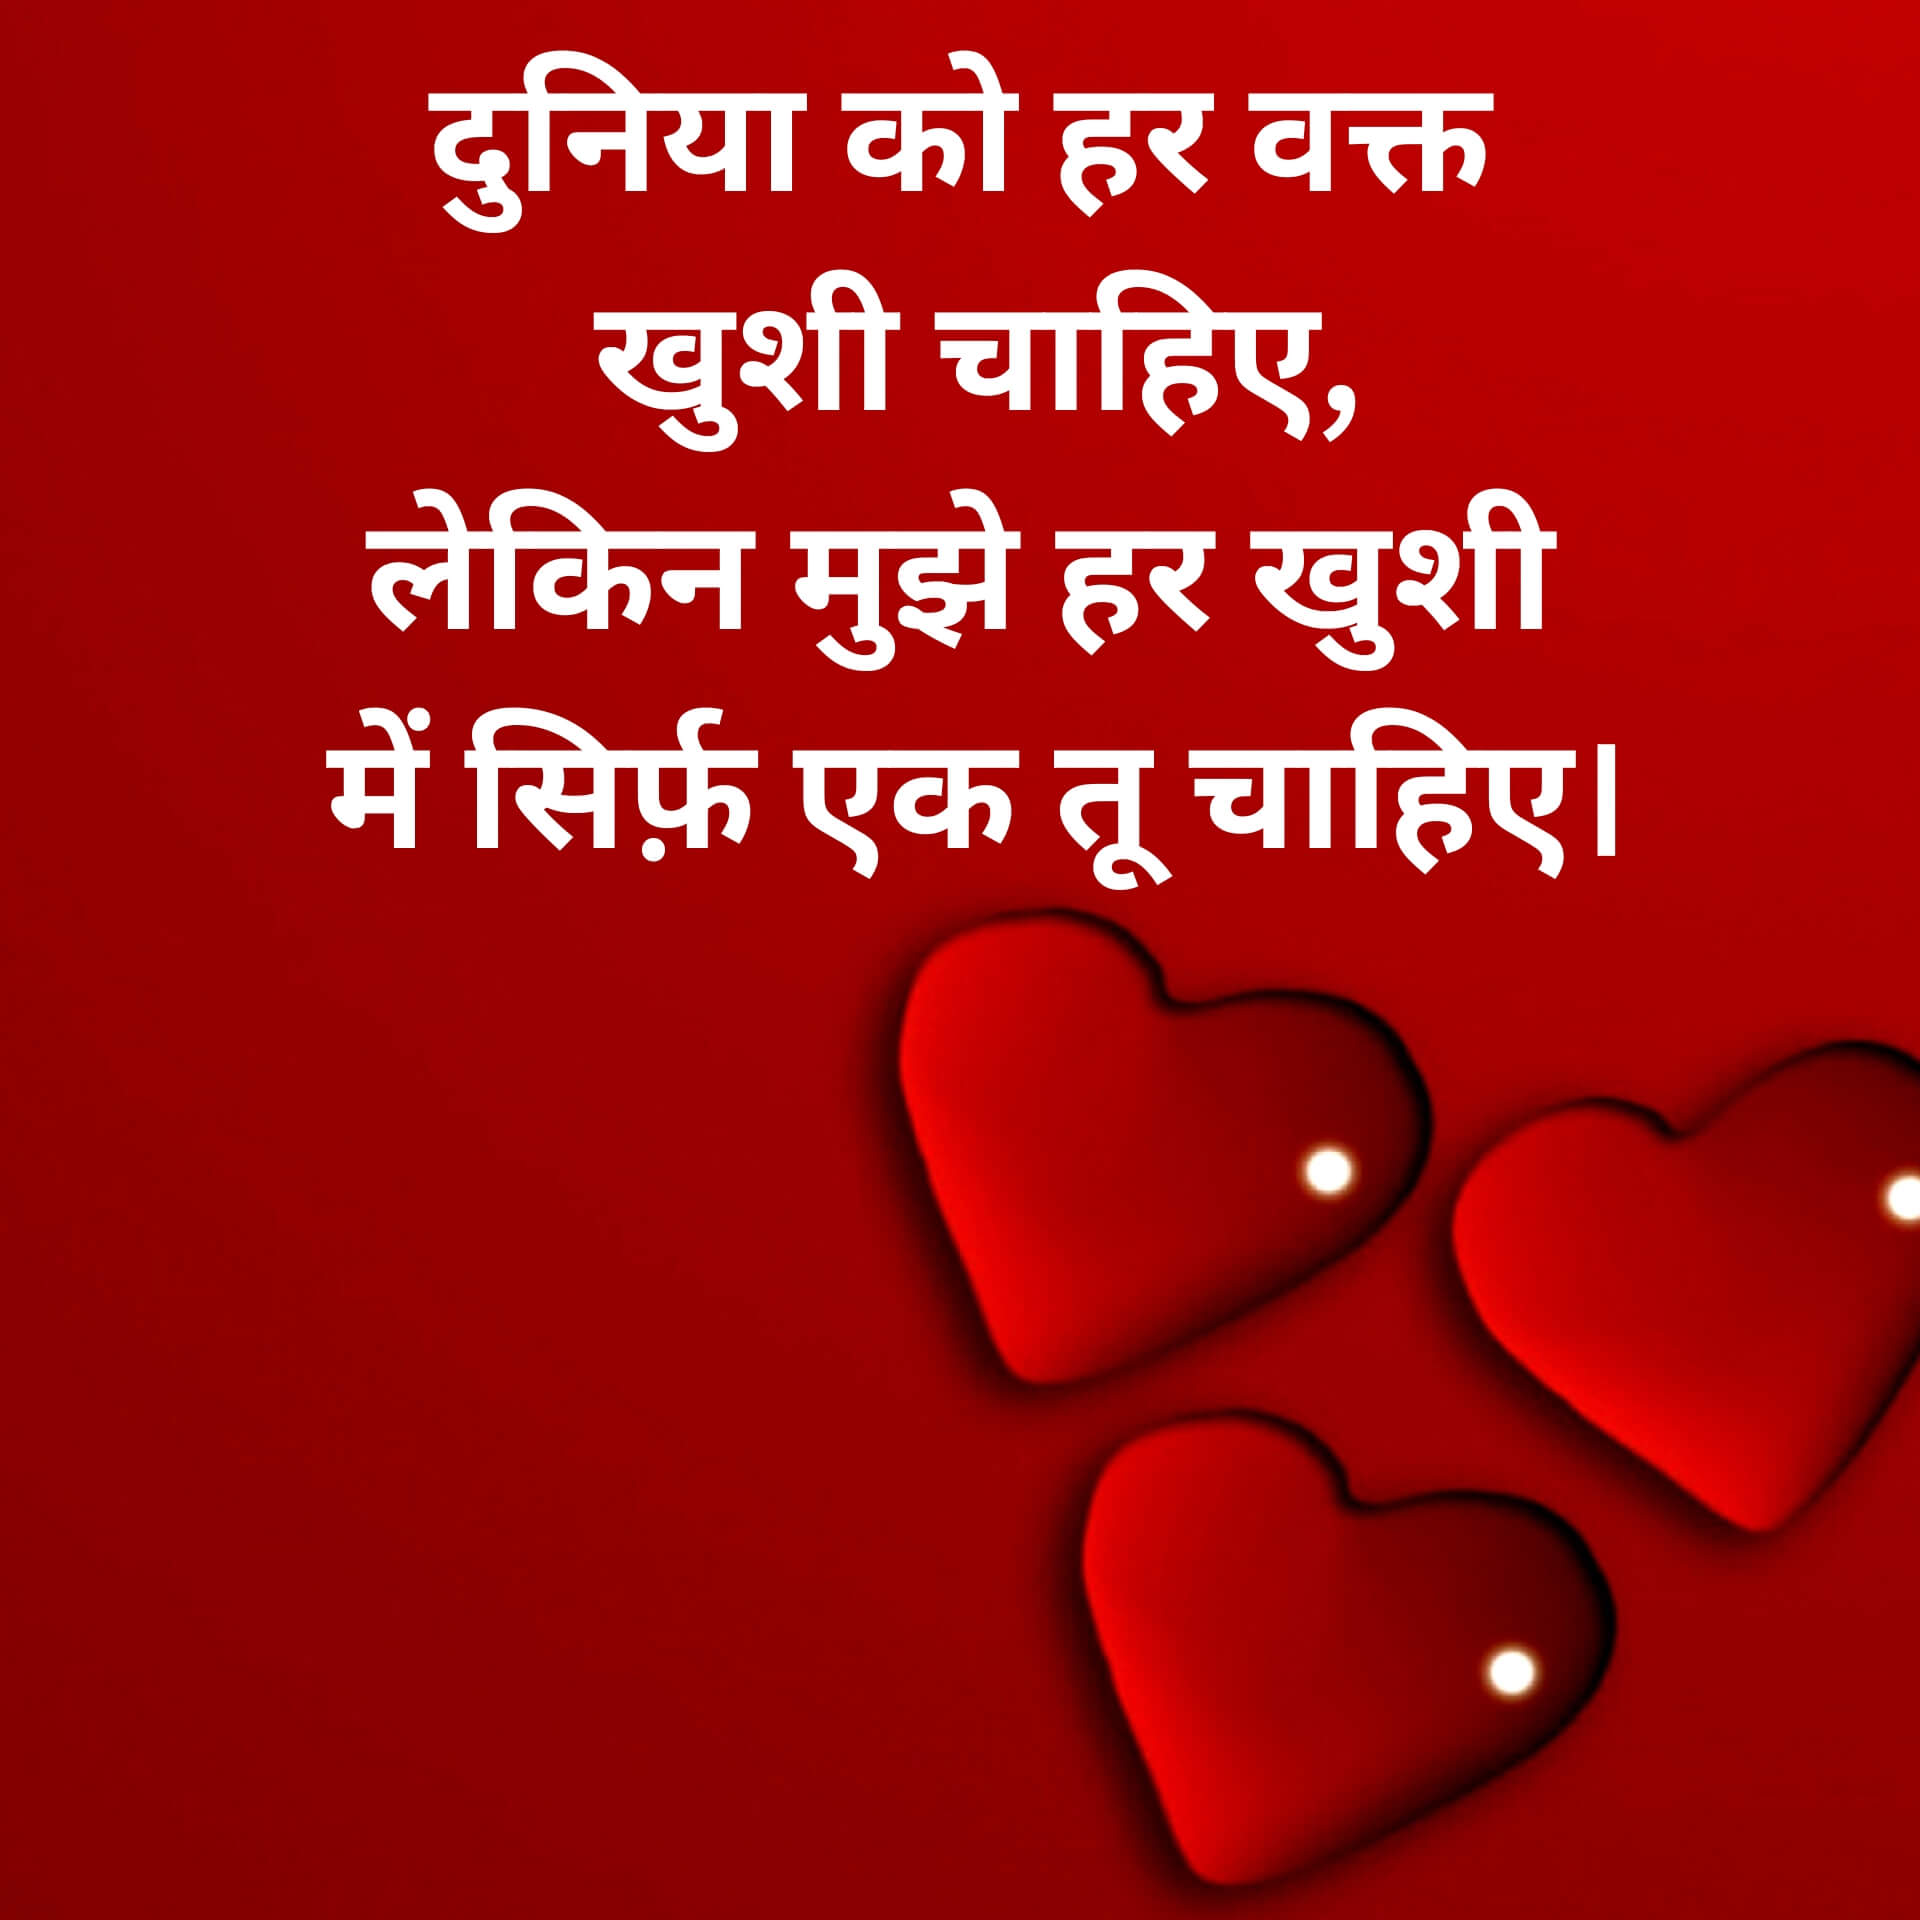 Hindi Love Shayari Wallpaper Free Download